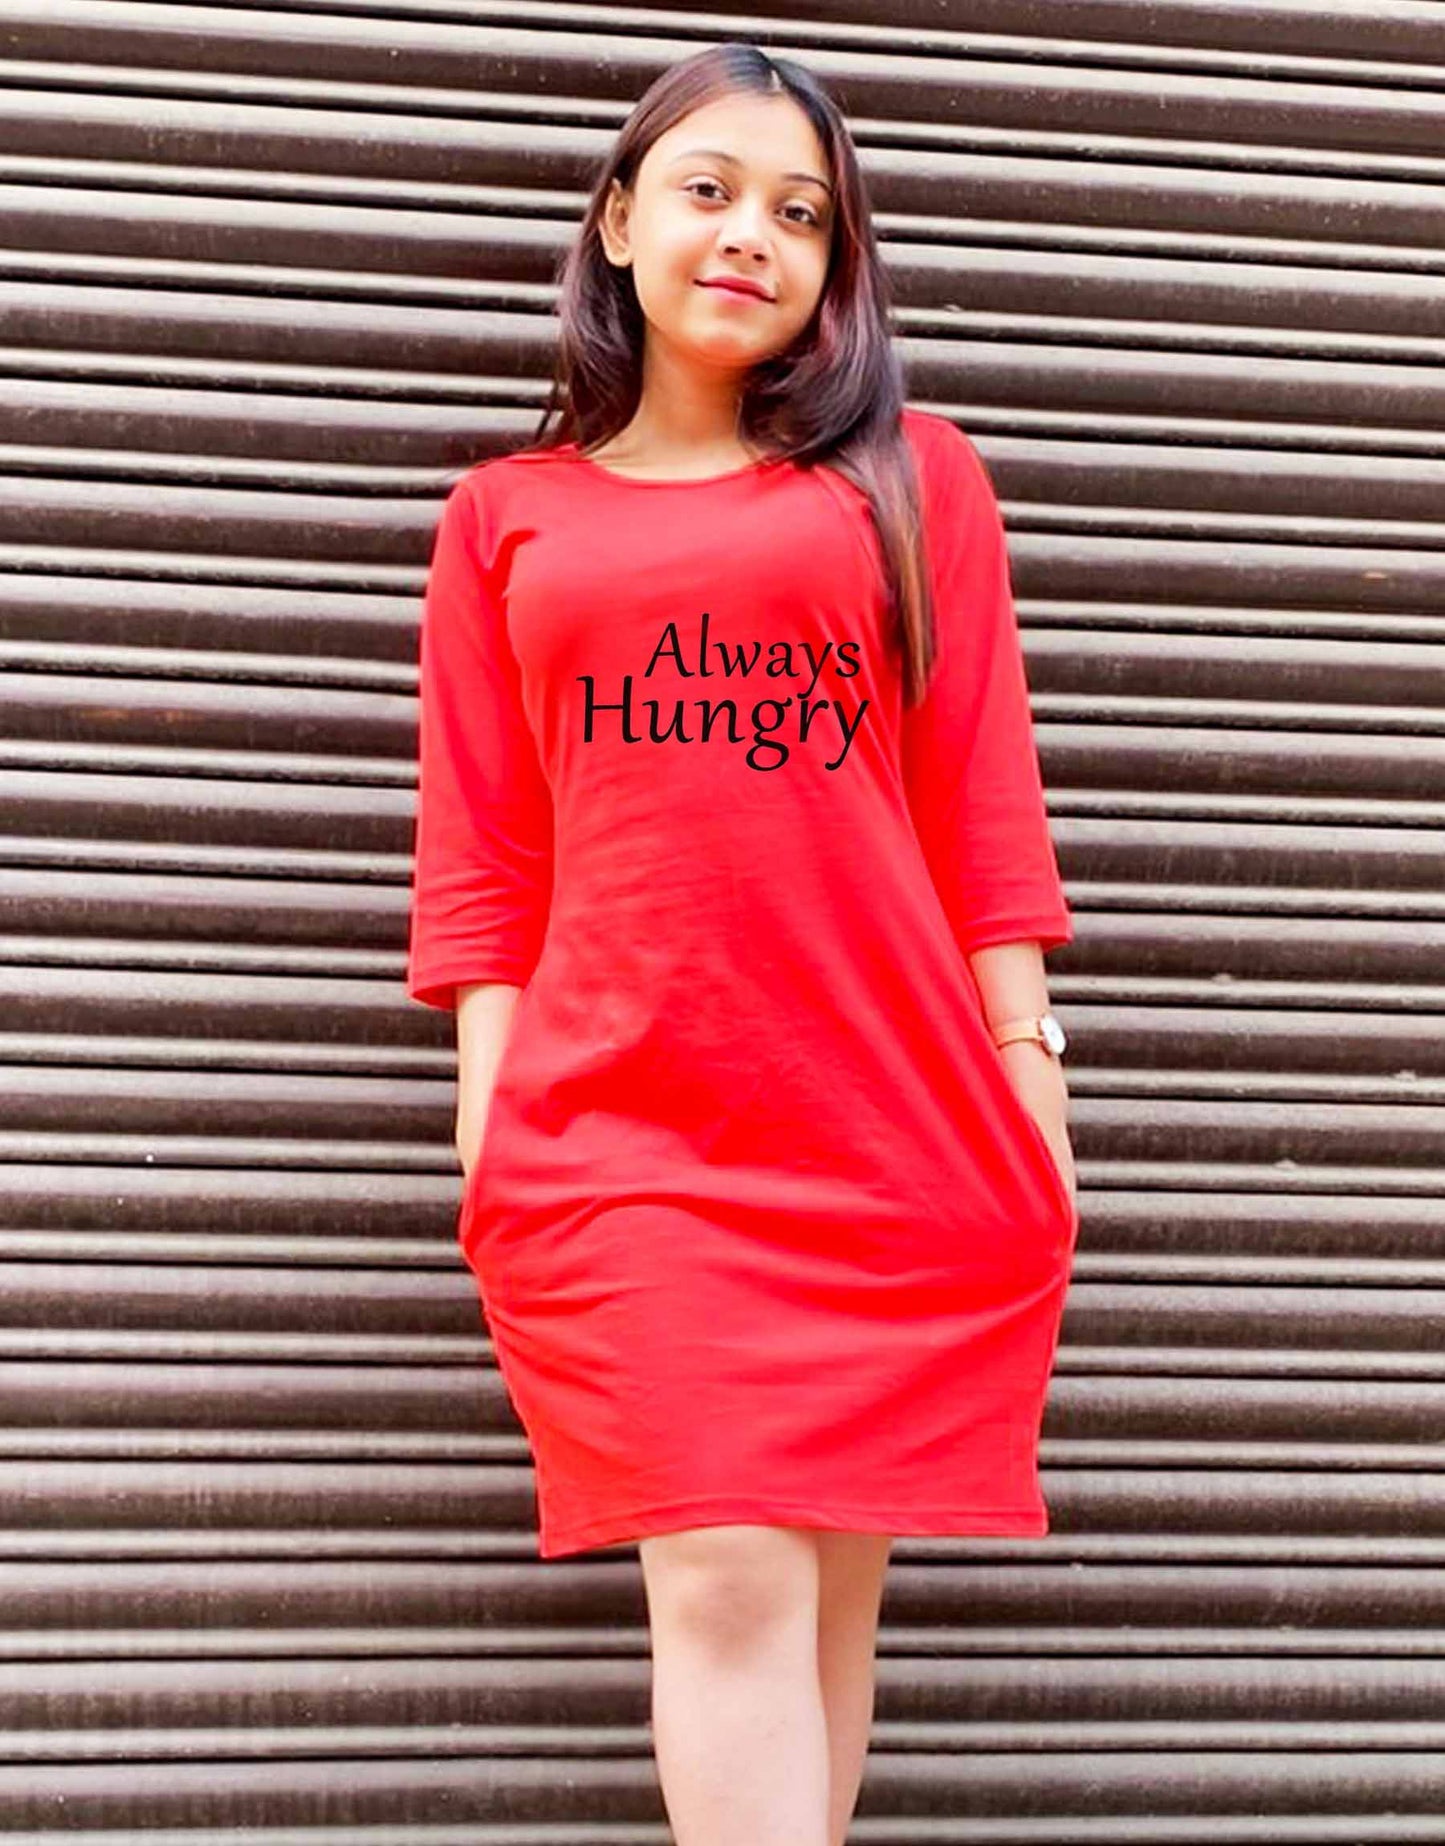 Always Hungry - T shirt Dress For Women - 699.00 - TEEGURUJI - Free Shipping